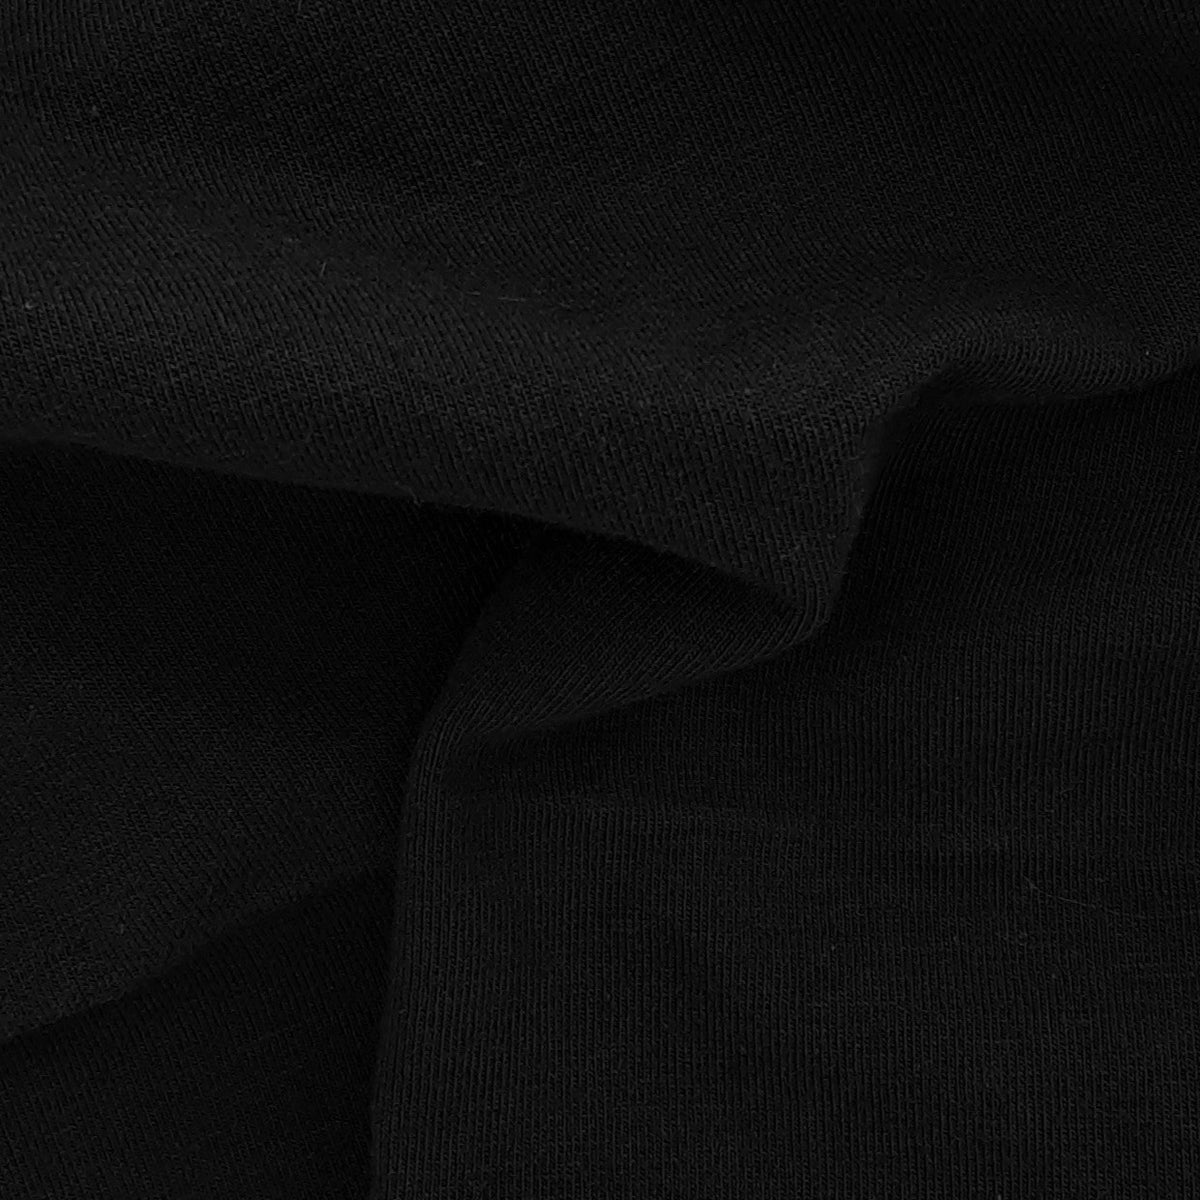 Black Cotton Lycra Fabric-110959